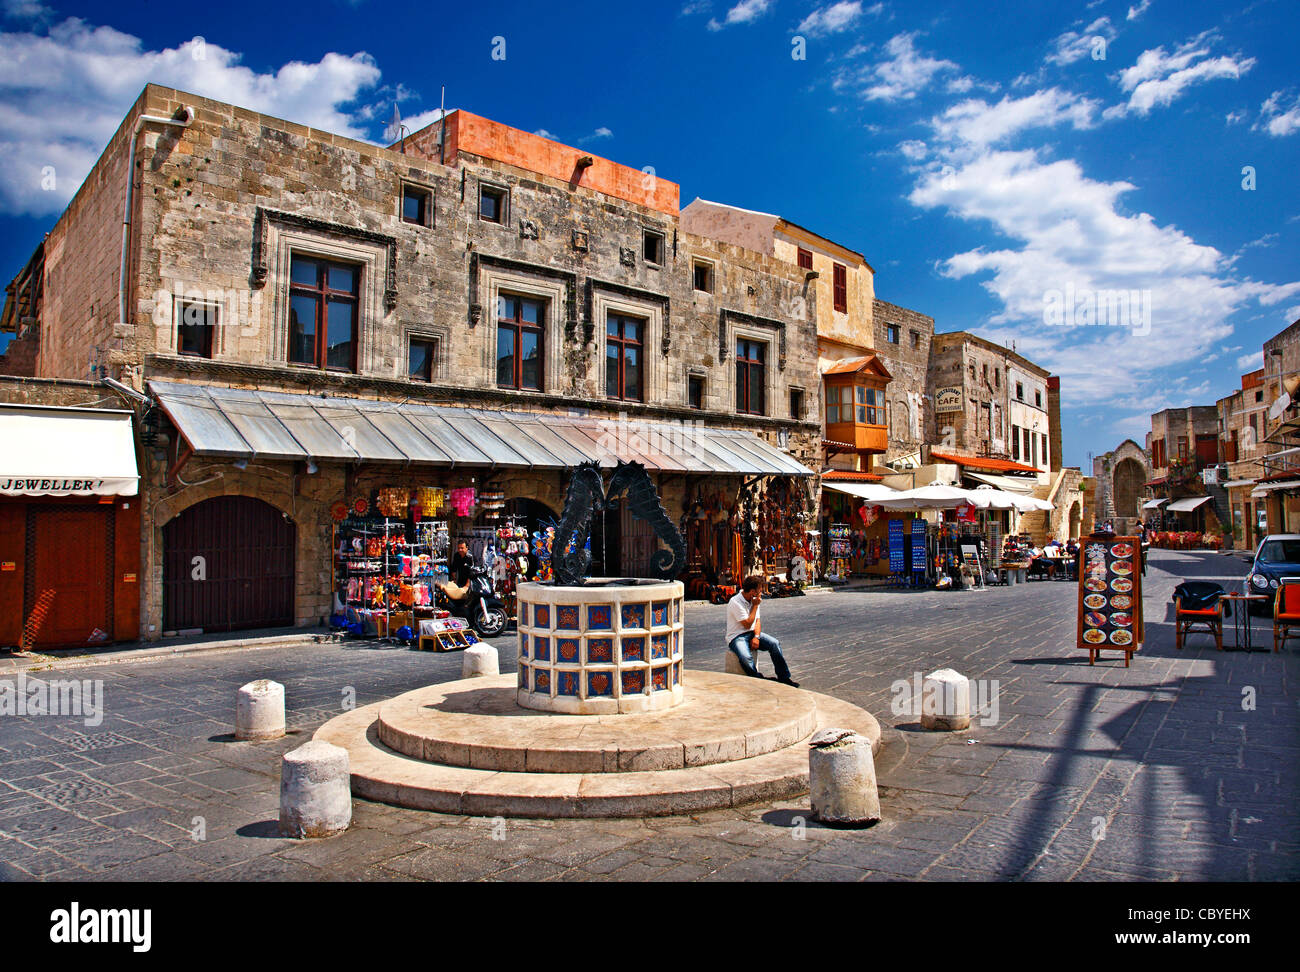 Der Platz der jüdischen Märtyrer, im Herzen der mittelalterlichen Stadt von Rhodos Insel, Dodekanes, Griechenland. Stockfoto